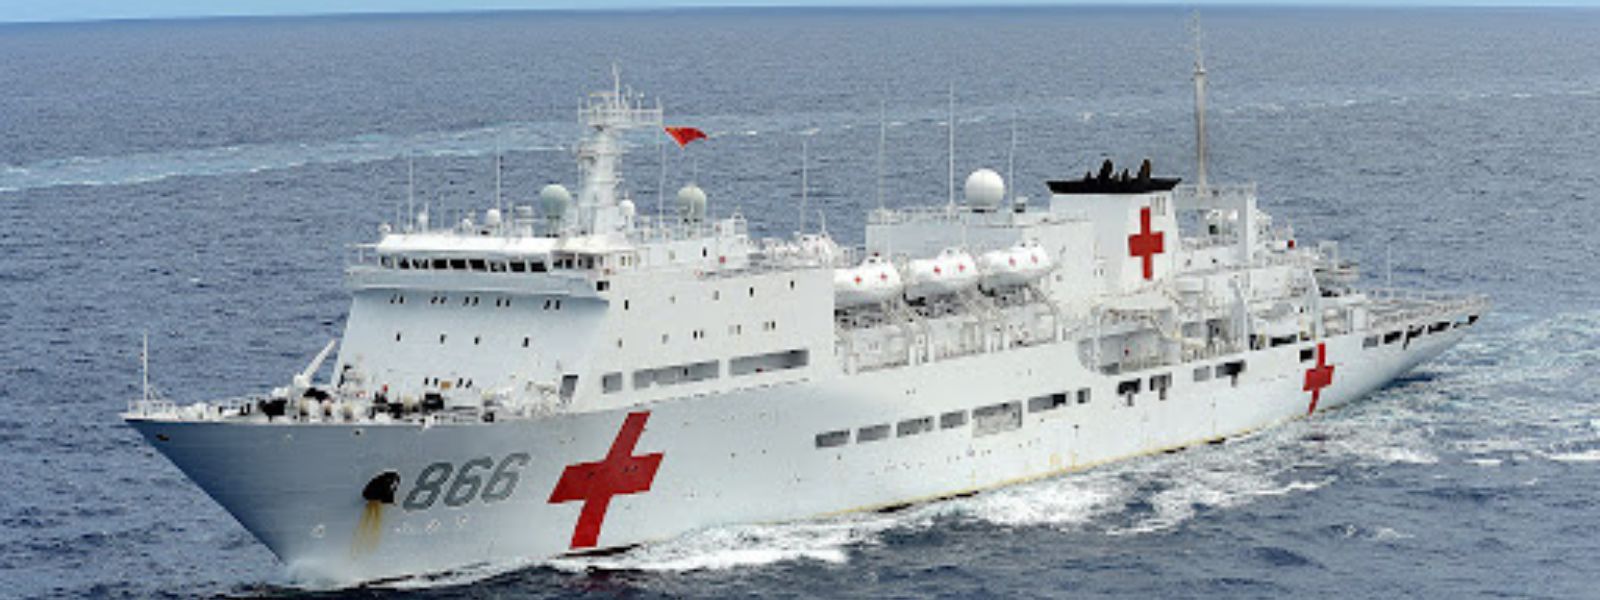 Chinese PLA Navy hospital ship to visit Sri Lanka